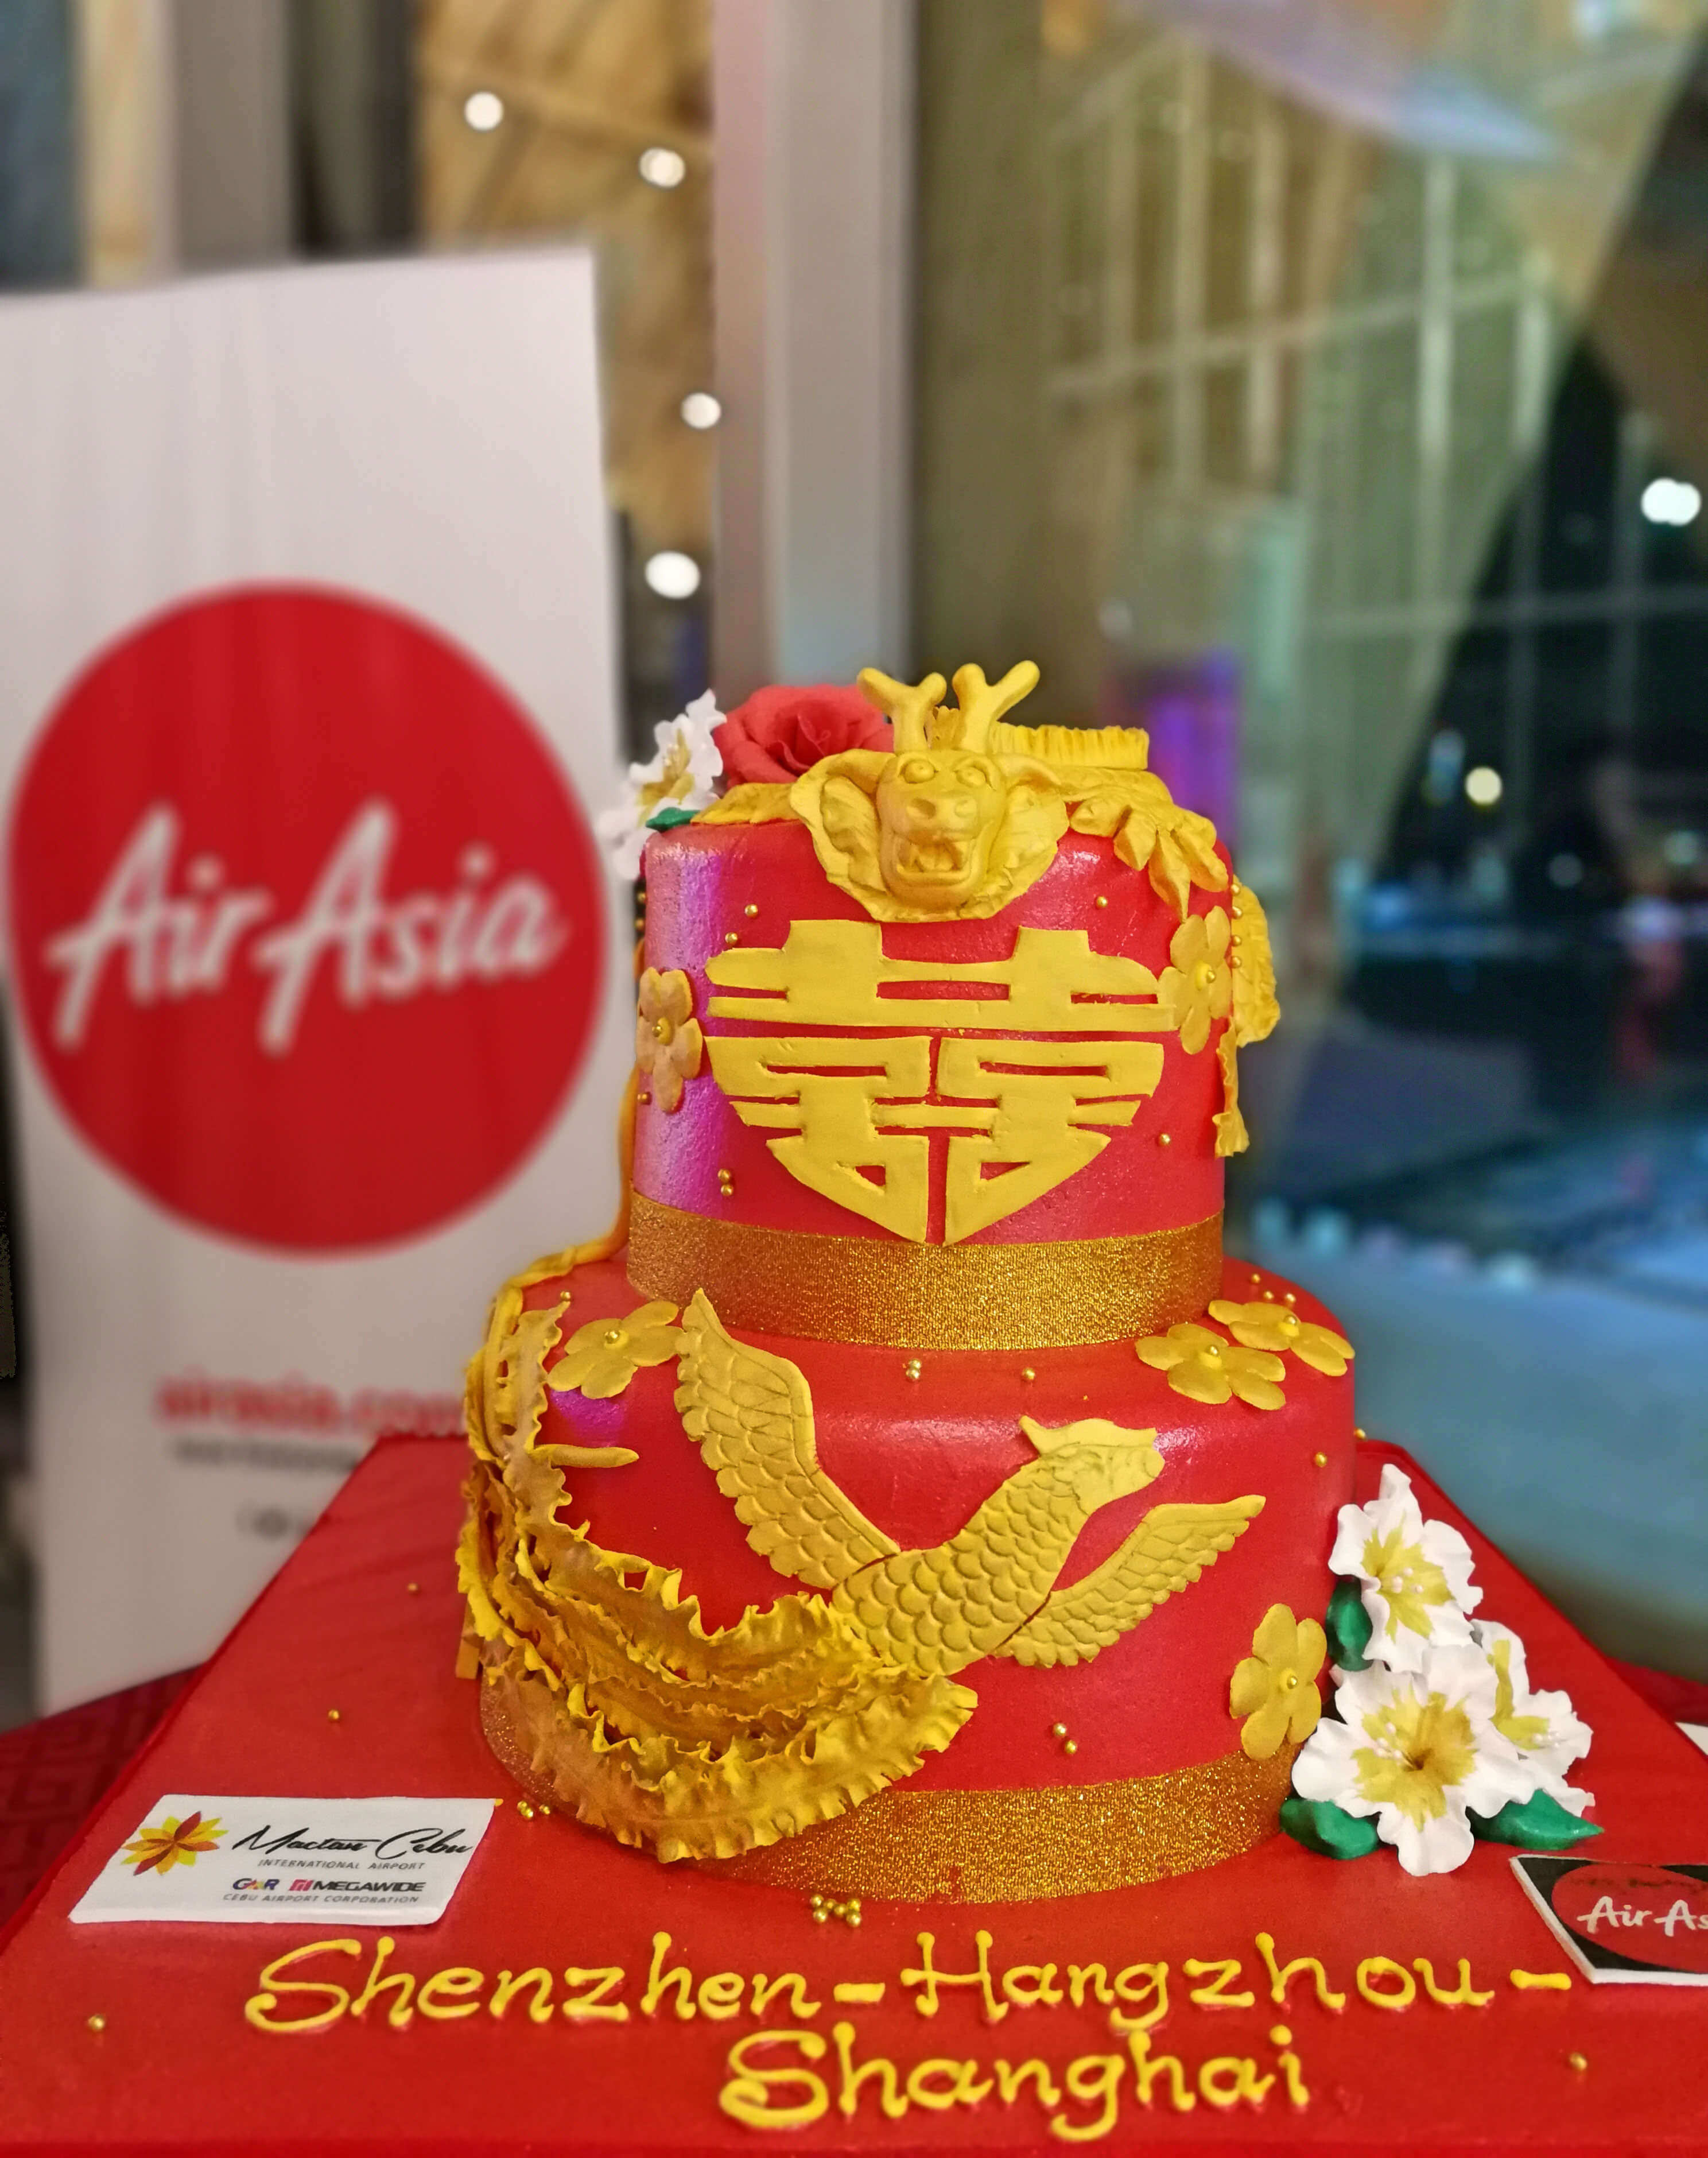 AirAsia Cebu-Shanghai flights